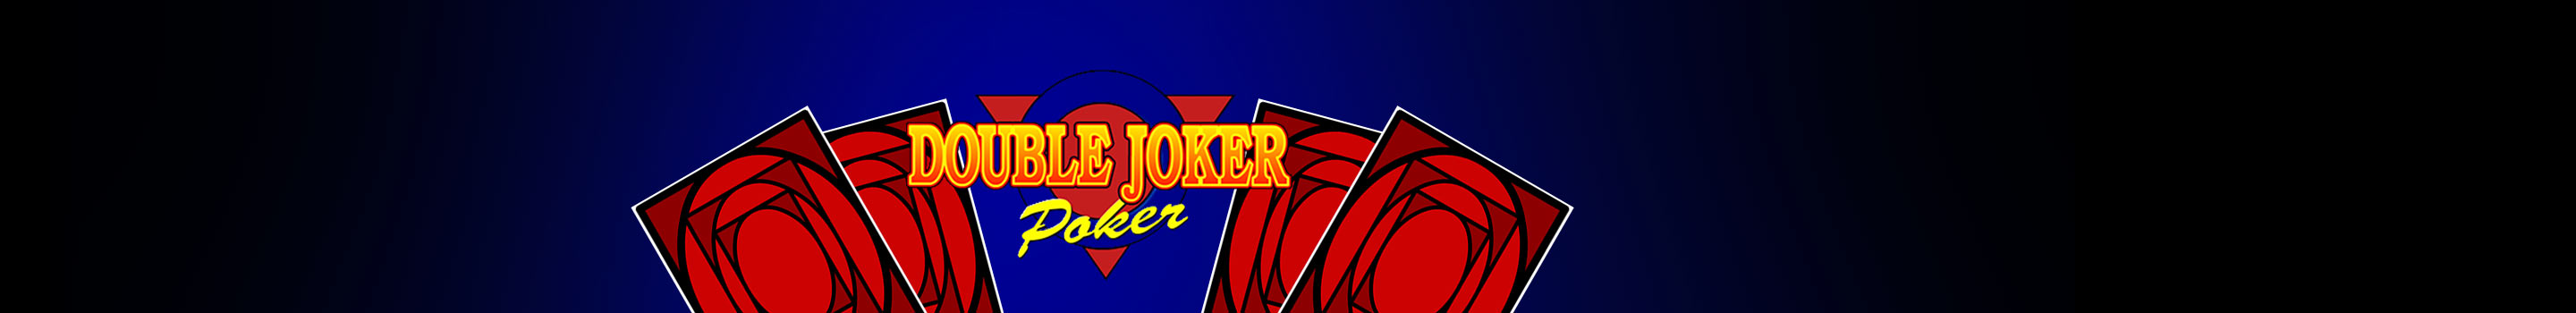 Double Joker Poker free